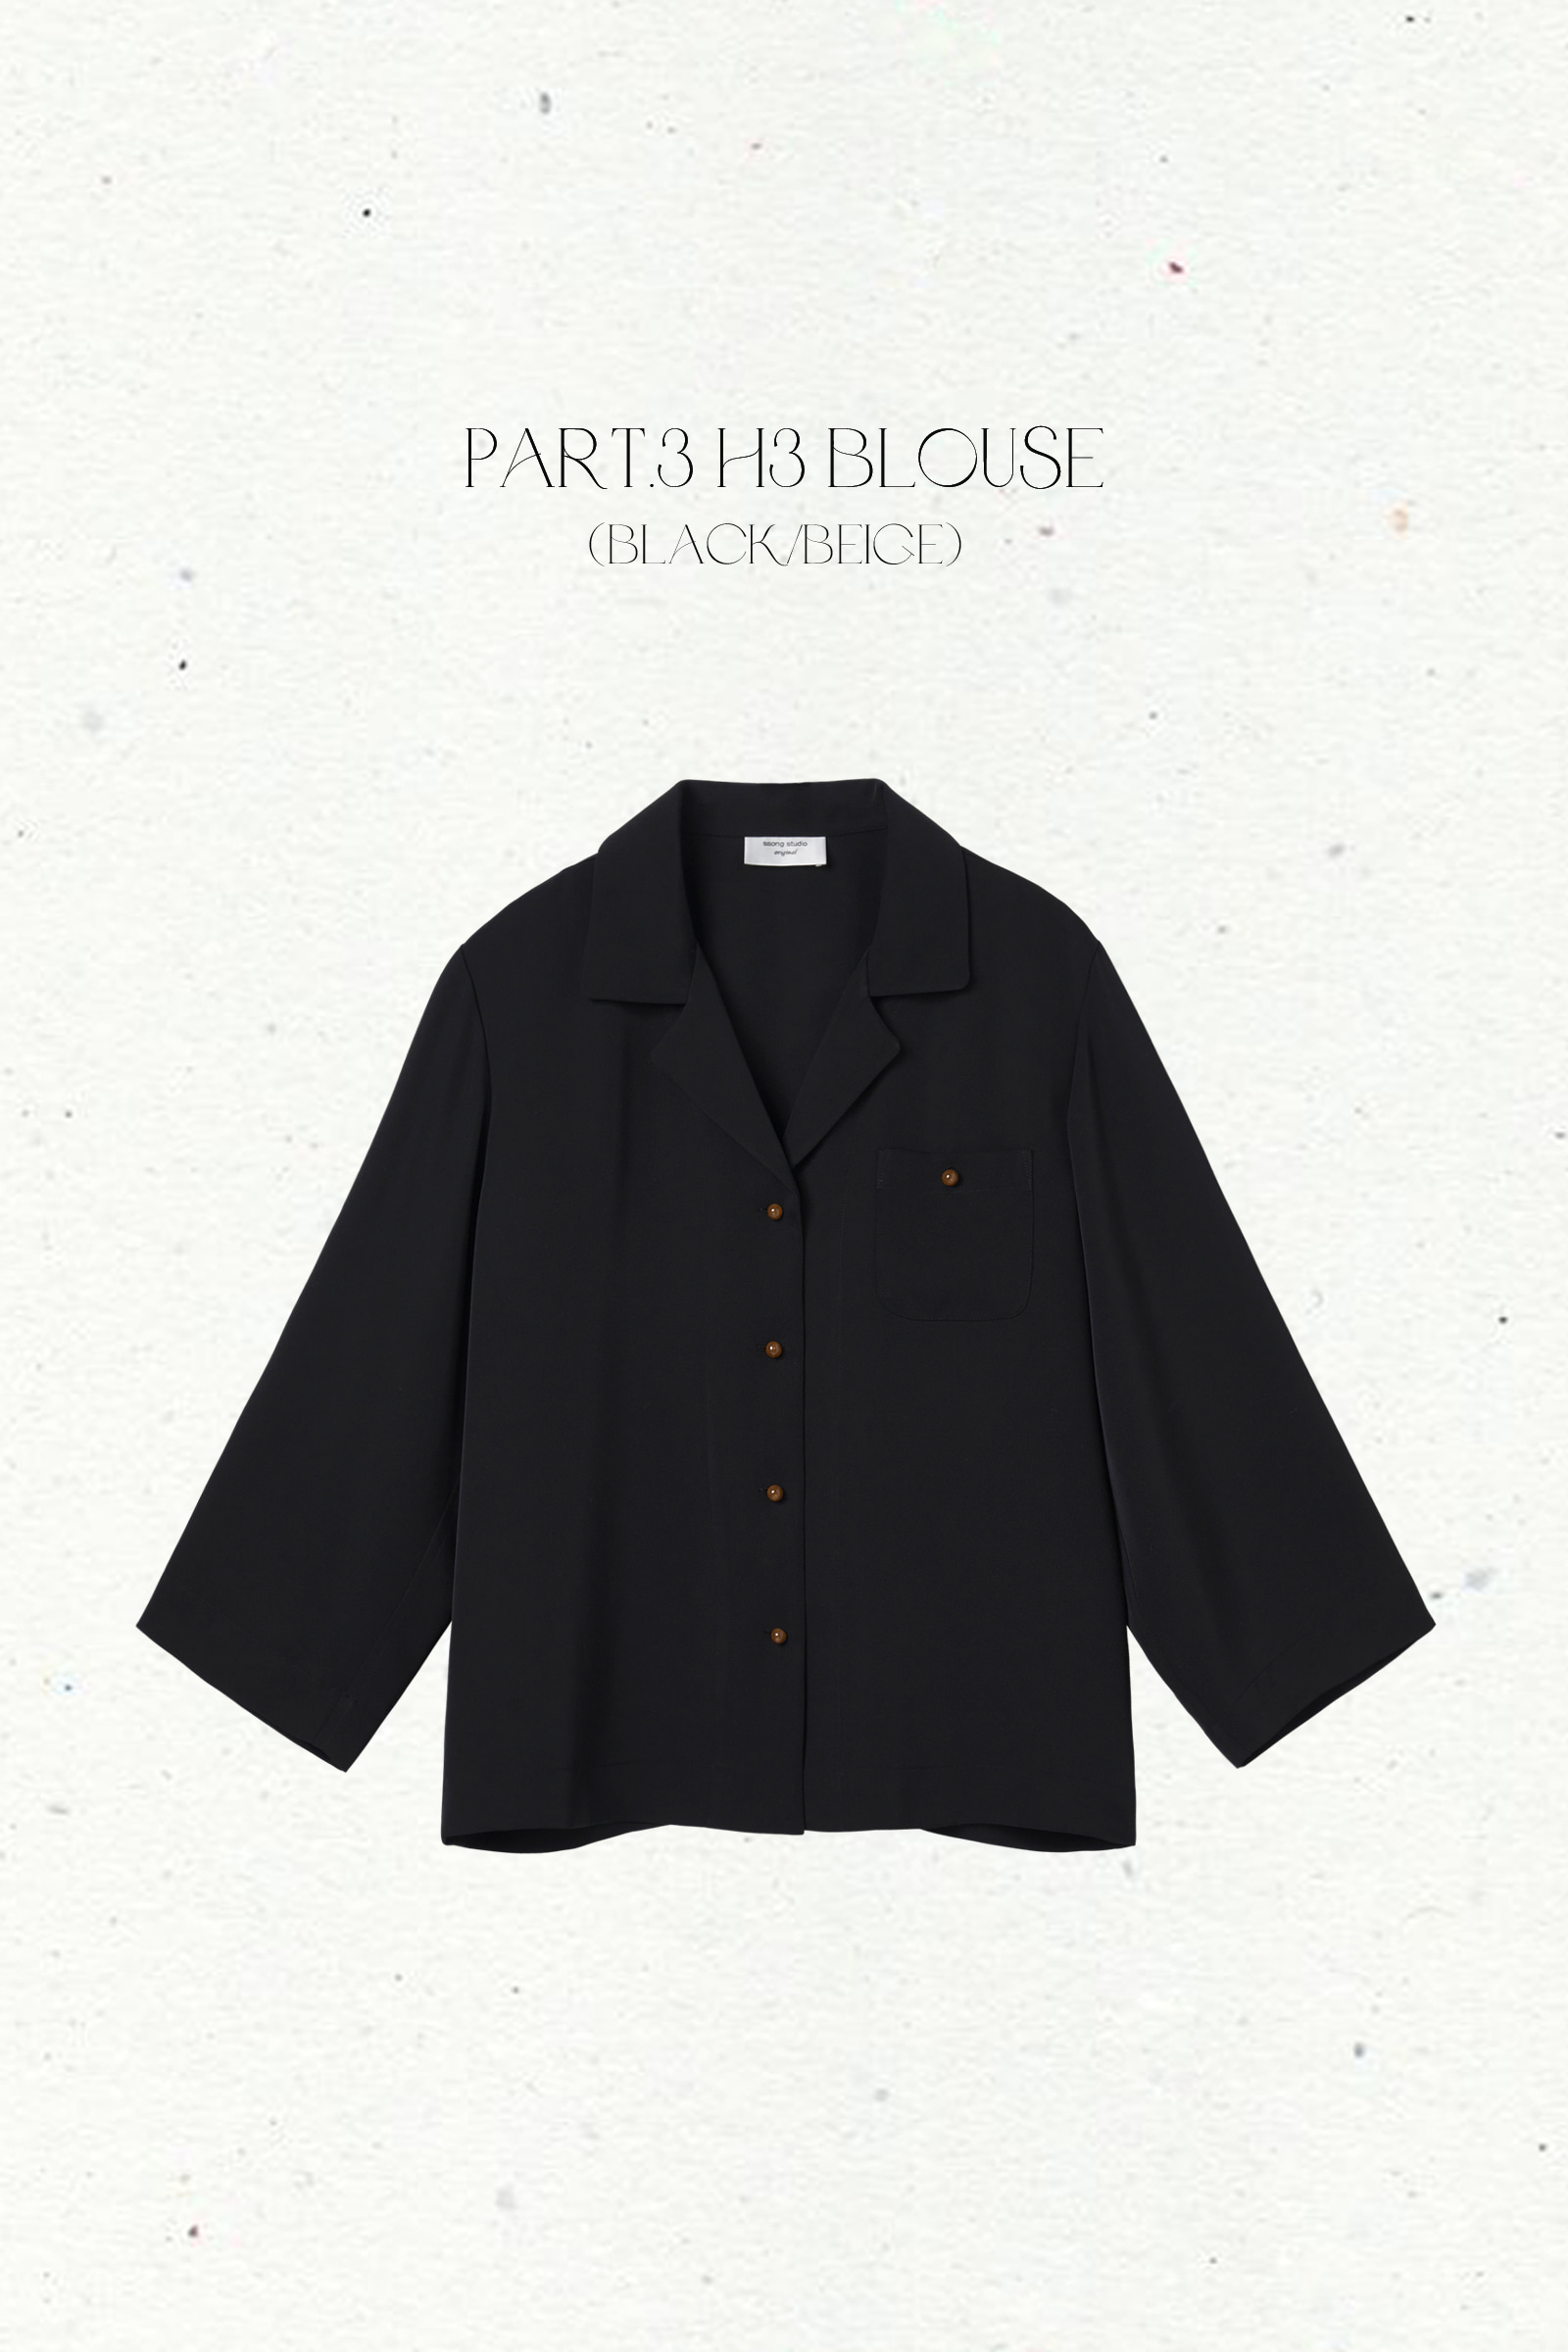 Part.3 H3 blouse (beige/black)